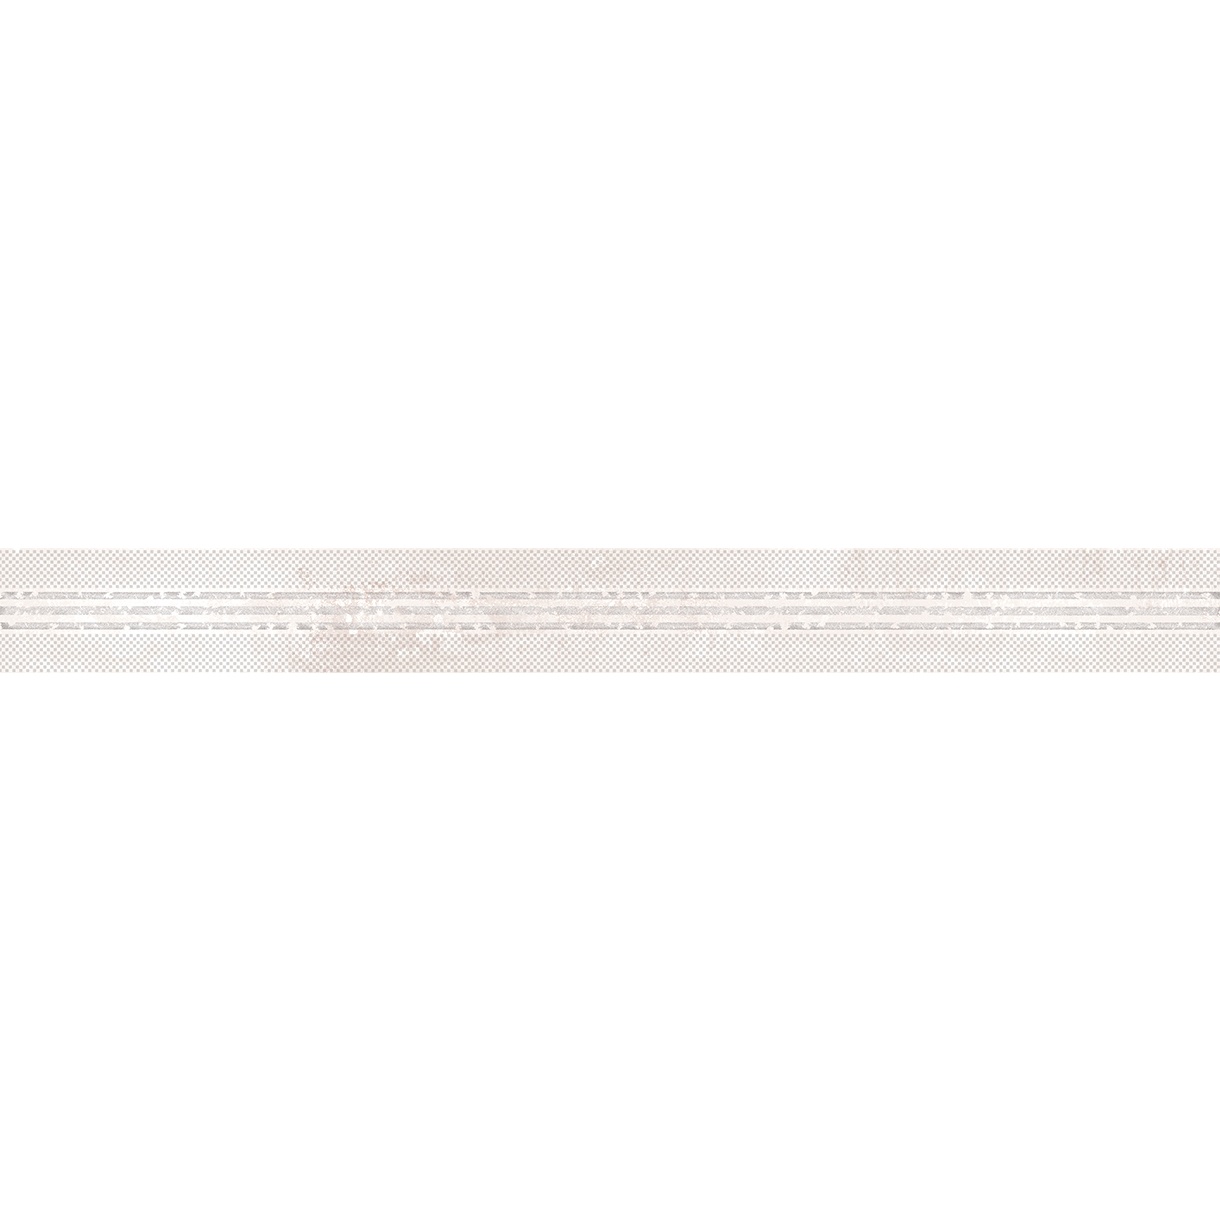 Бордюр Нефрит-Керамика Росси 6х60 см (05-01-1-68-03-11-1753-0)